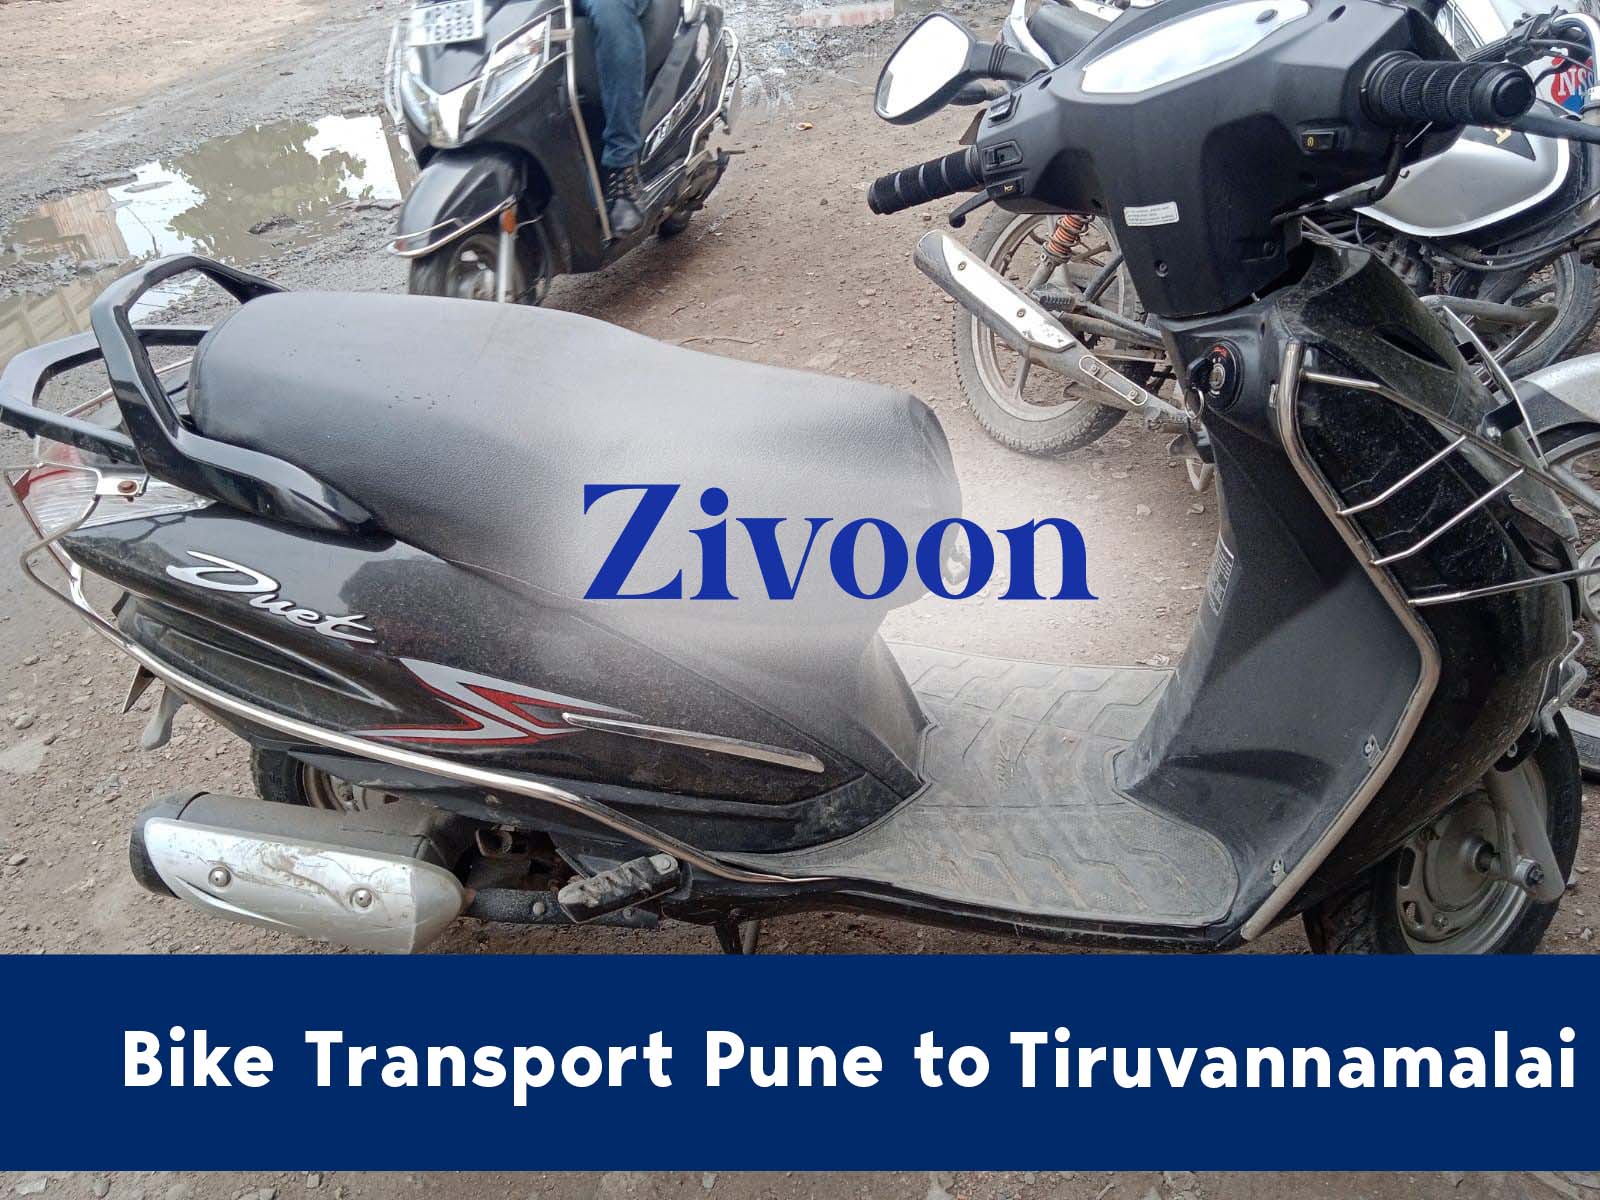 Bike Shifting Service Pune to Tiruvannamalai